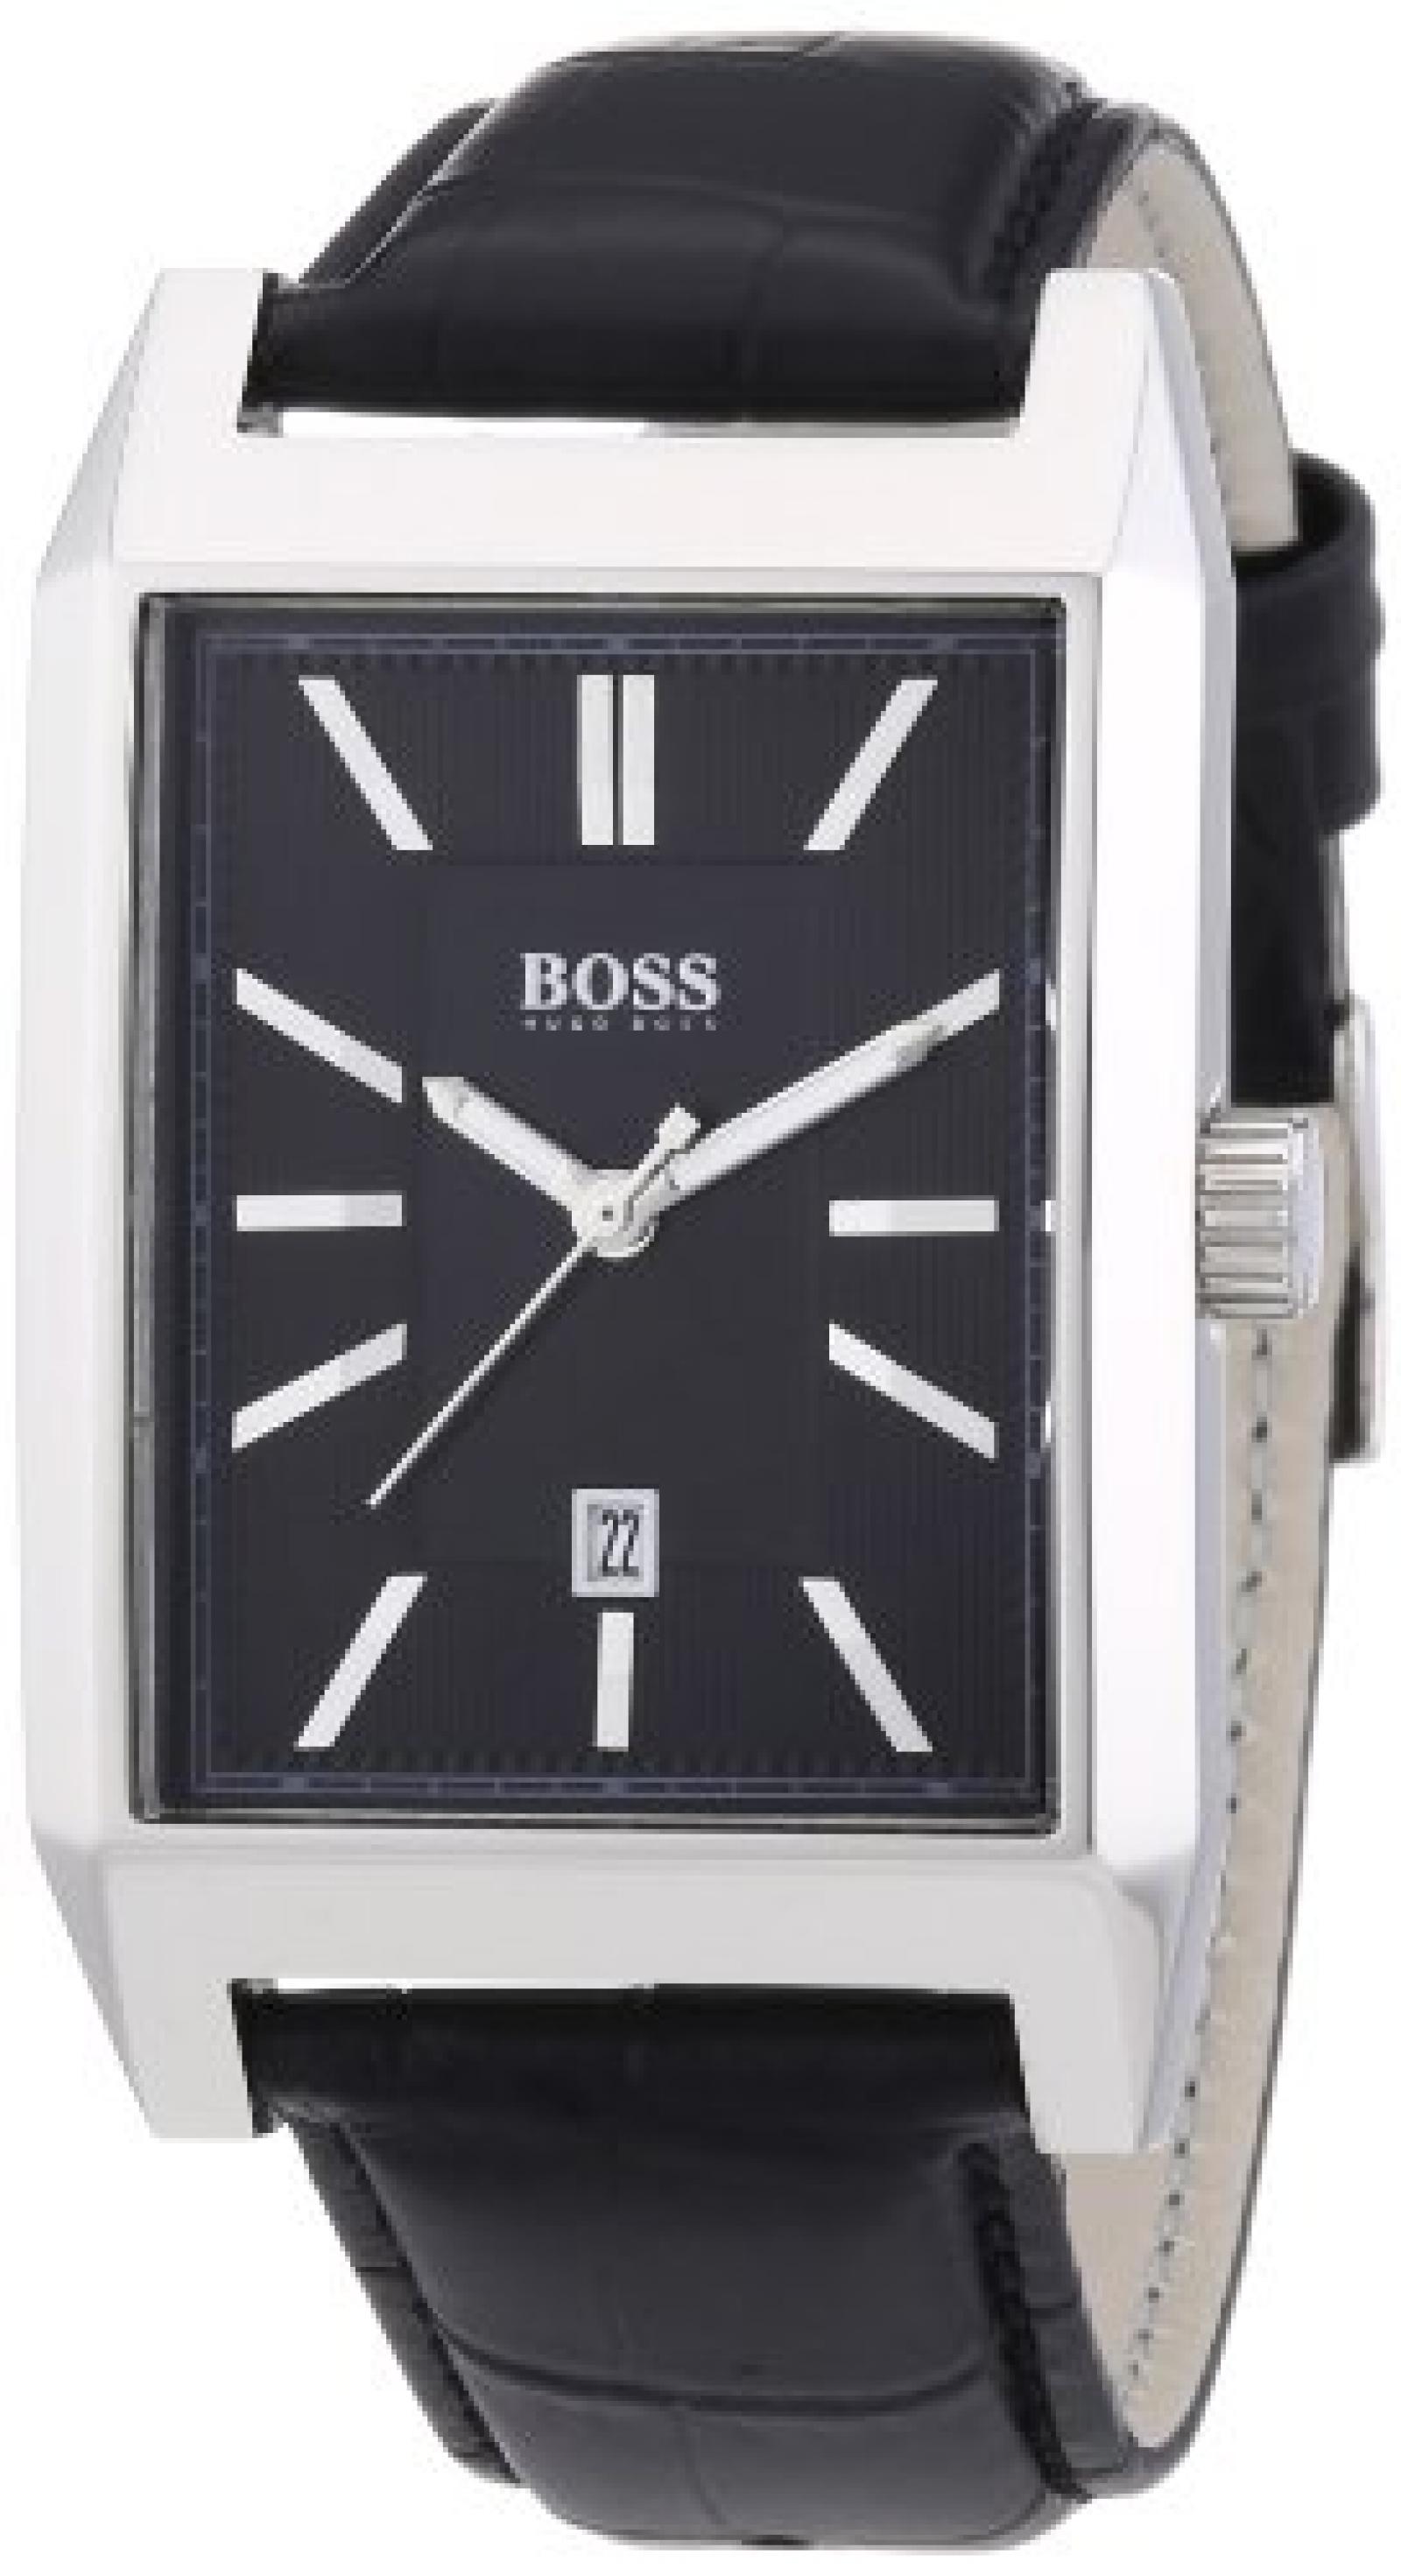 Hugo Boss Herren-Armbanduhr Analog Quarz Leder 1512915 